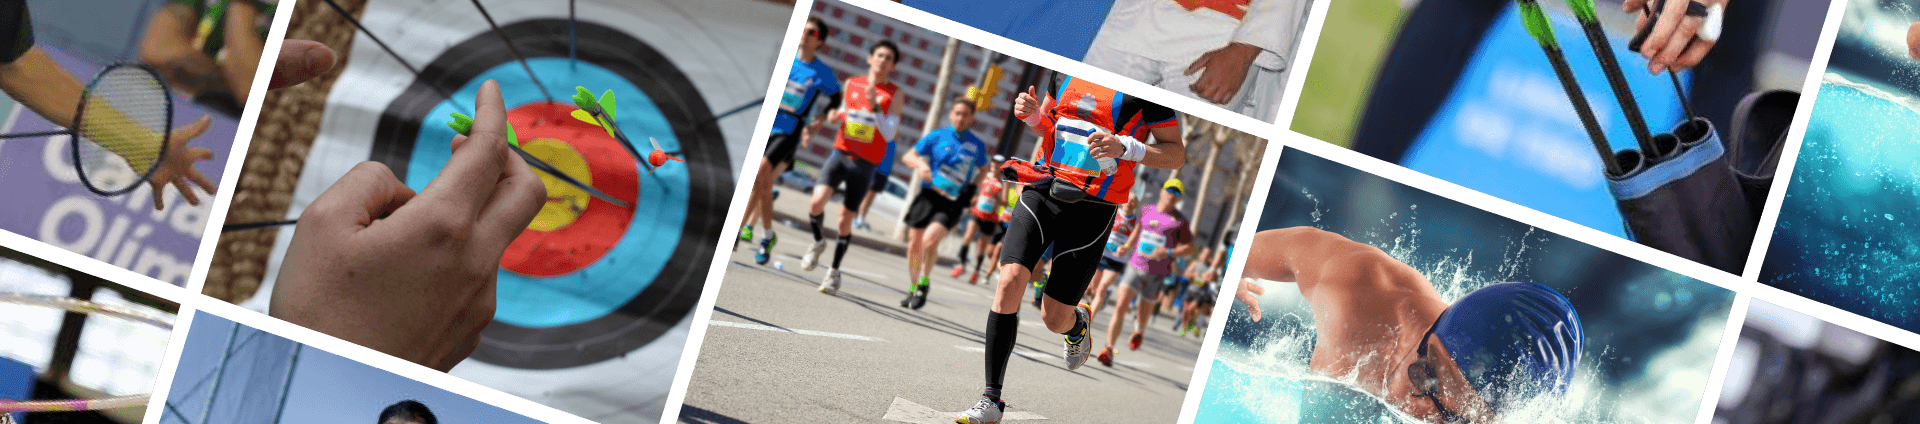 Pessoas correndo em uma maratona